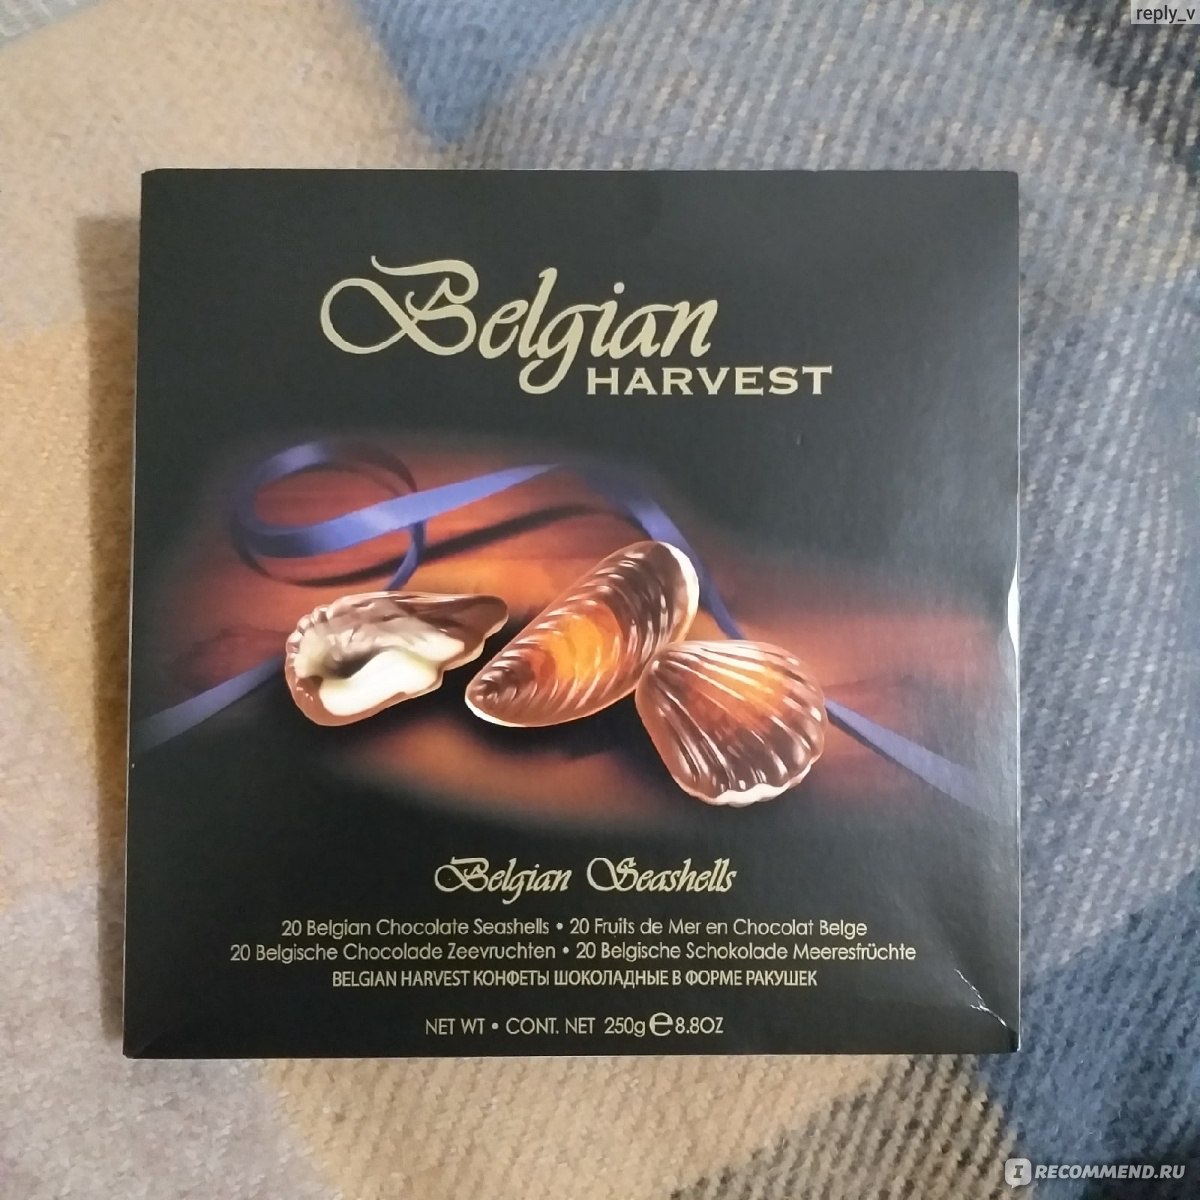 Бельгийский шоколад Belgian Harvest